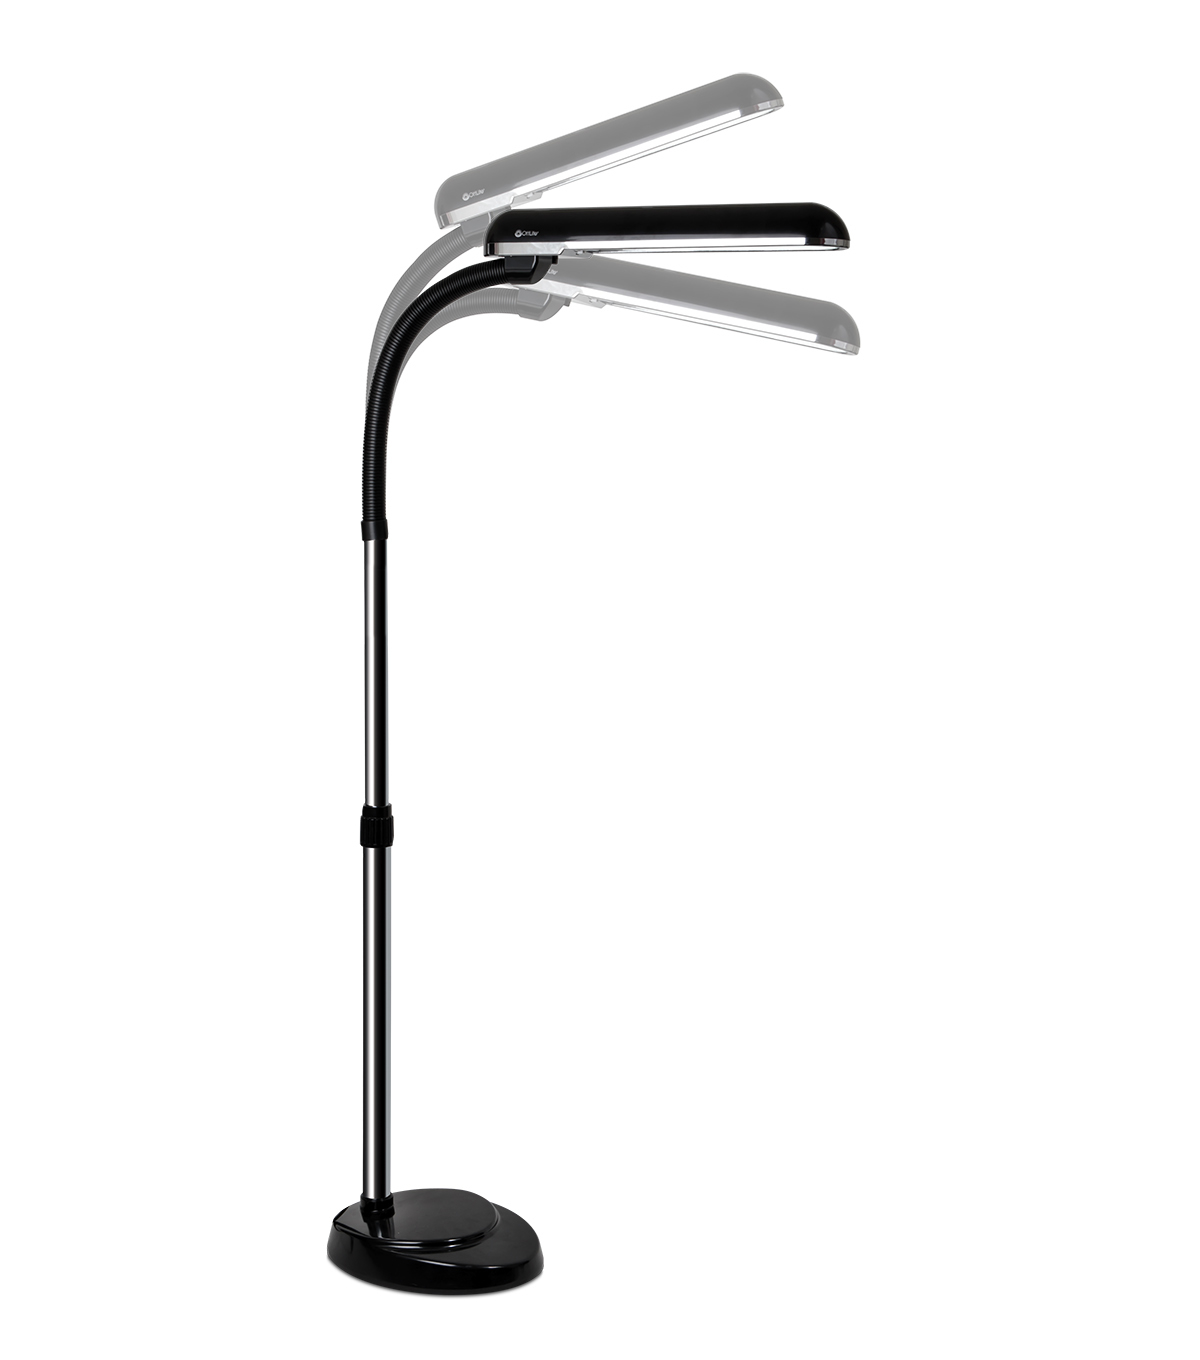 Ottlite 24w High Design Pro Floor Lamp with regard to measurements 1200 X 1360